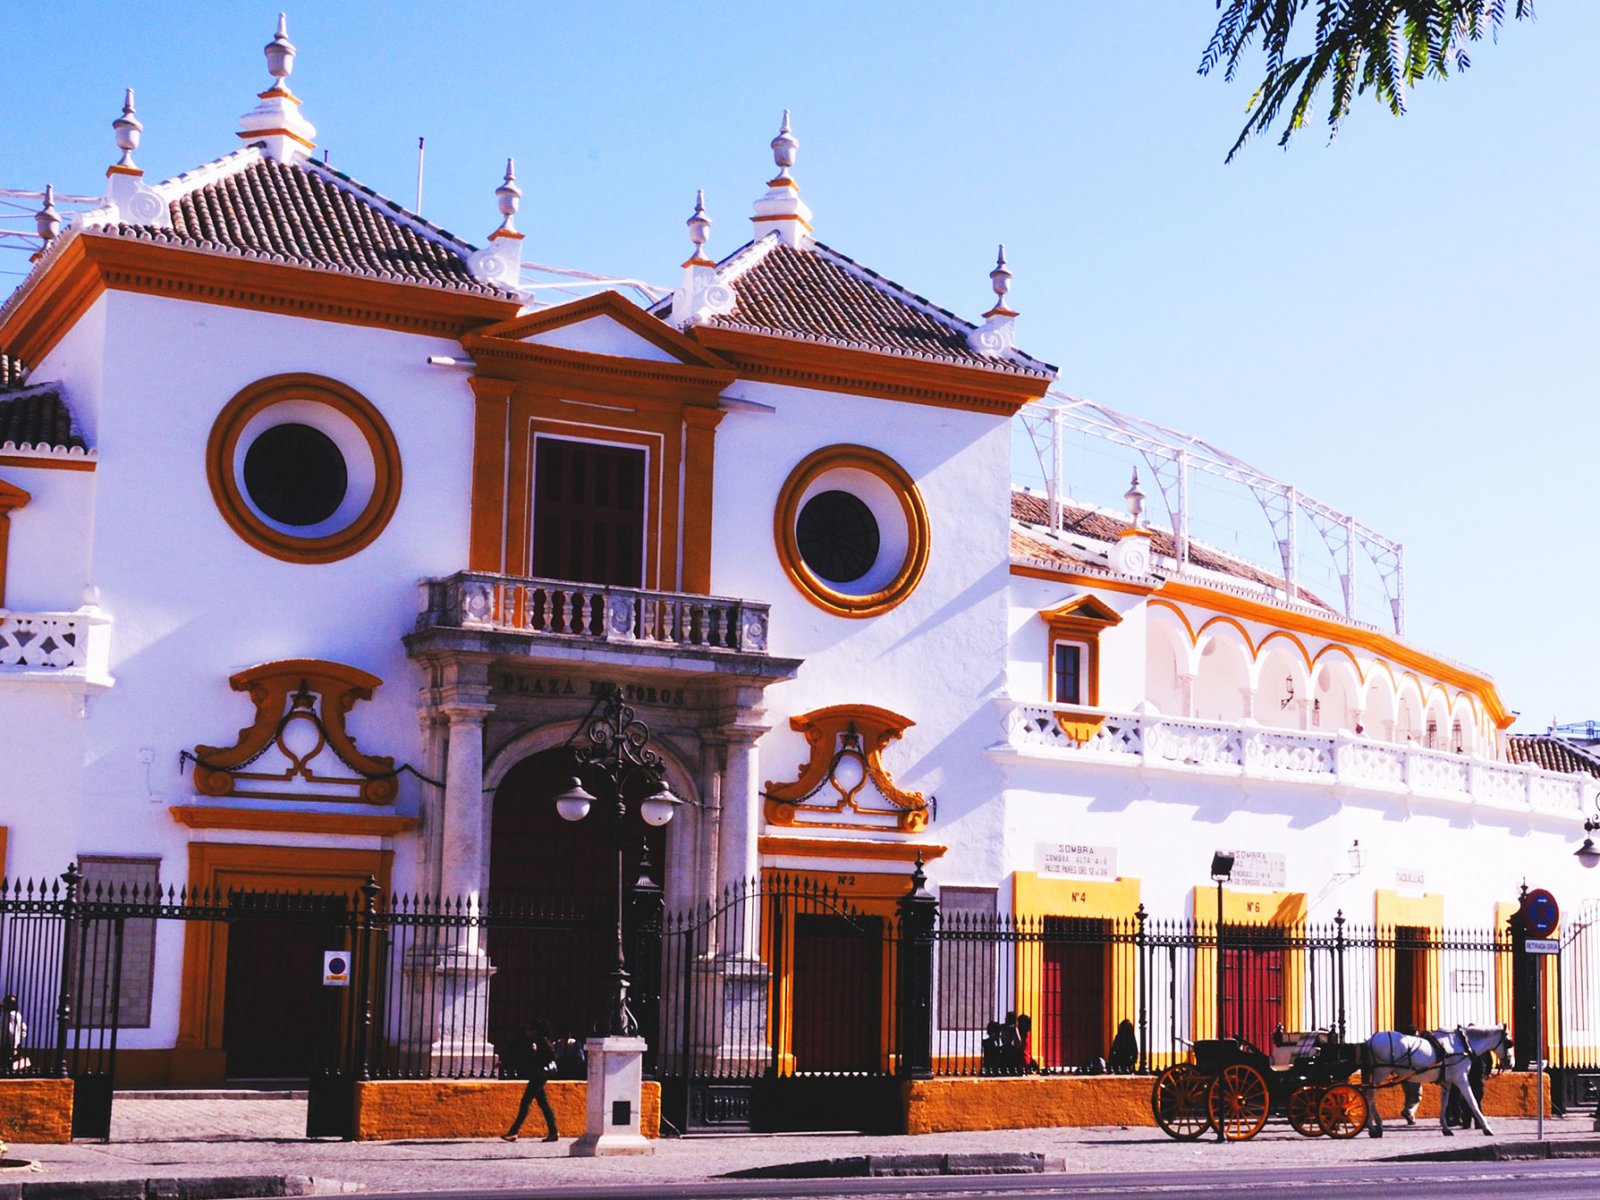 Plaza de Toros de la Maestranza, Seville